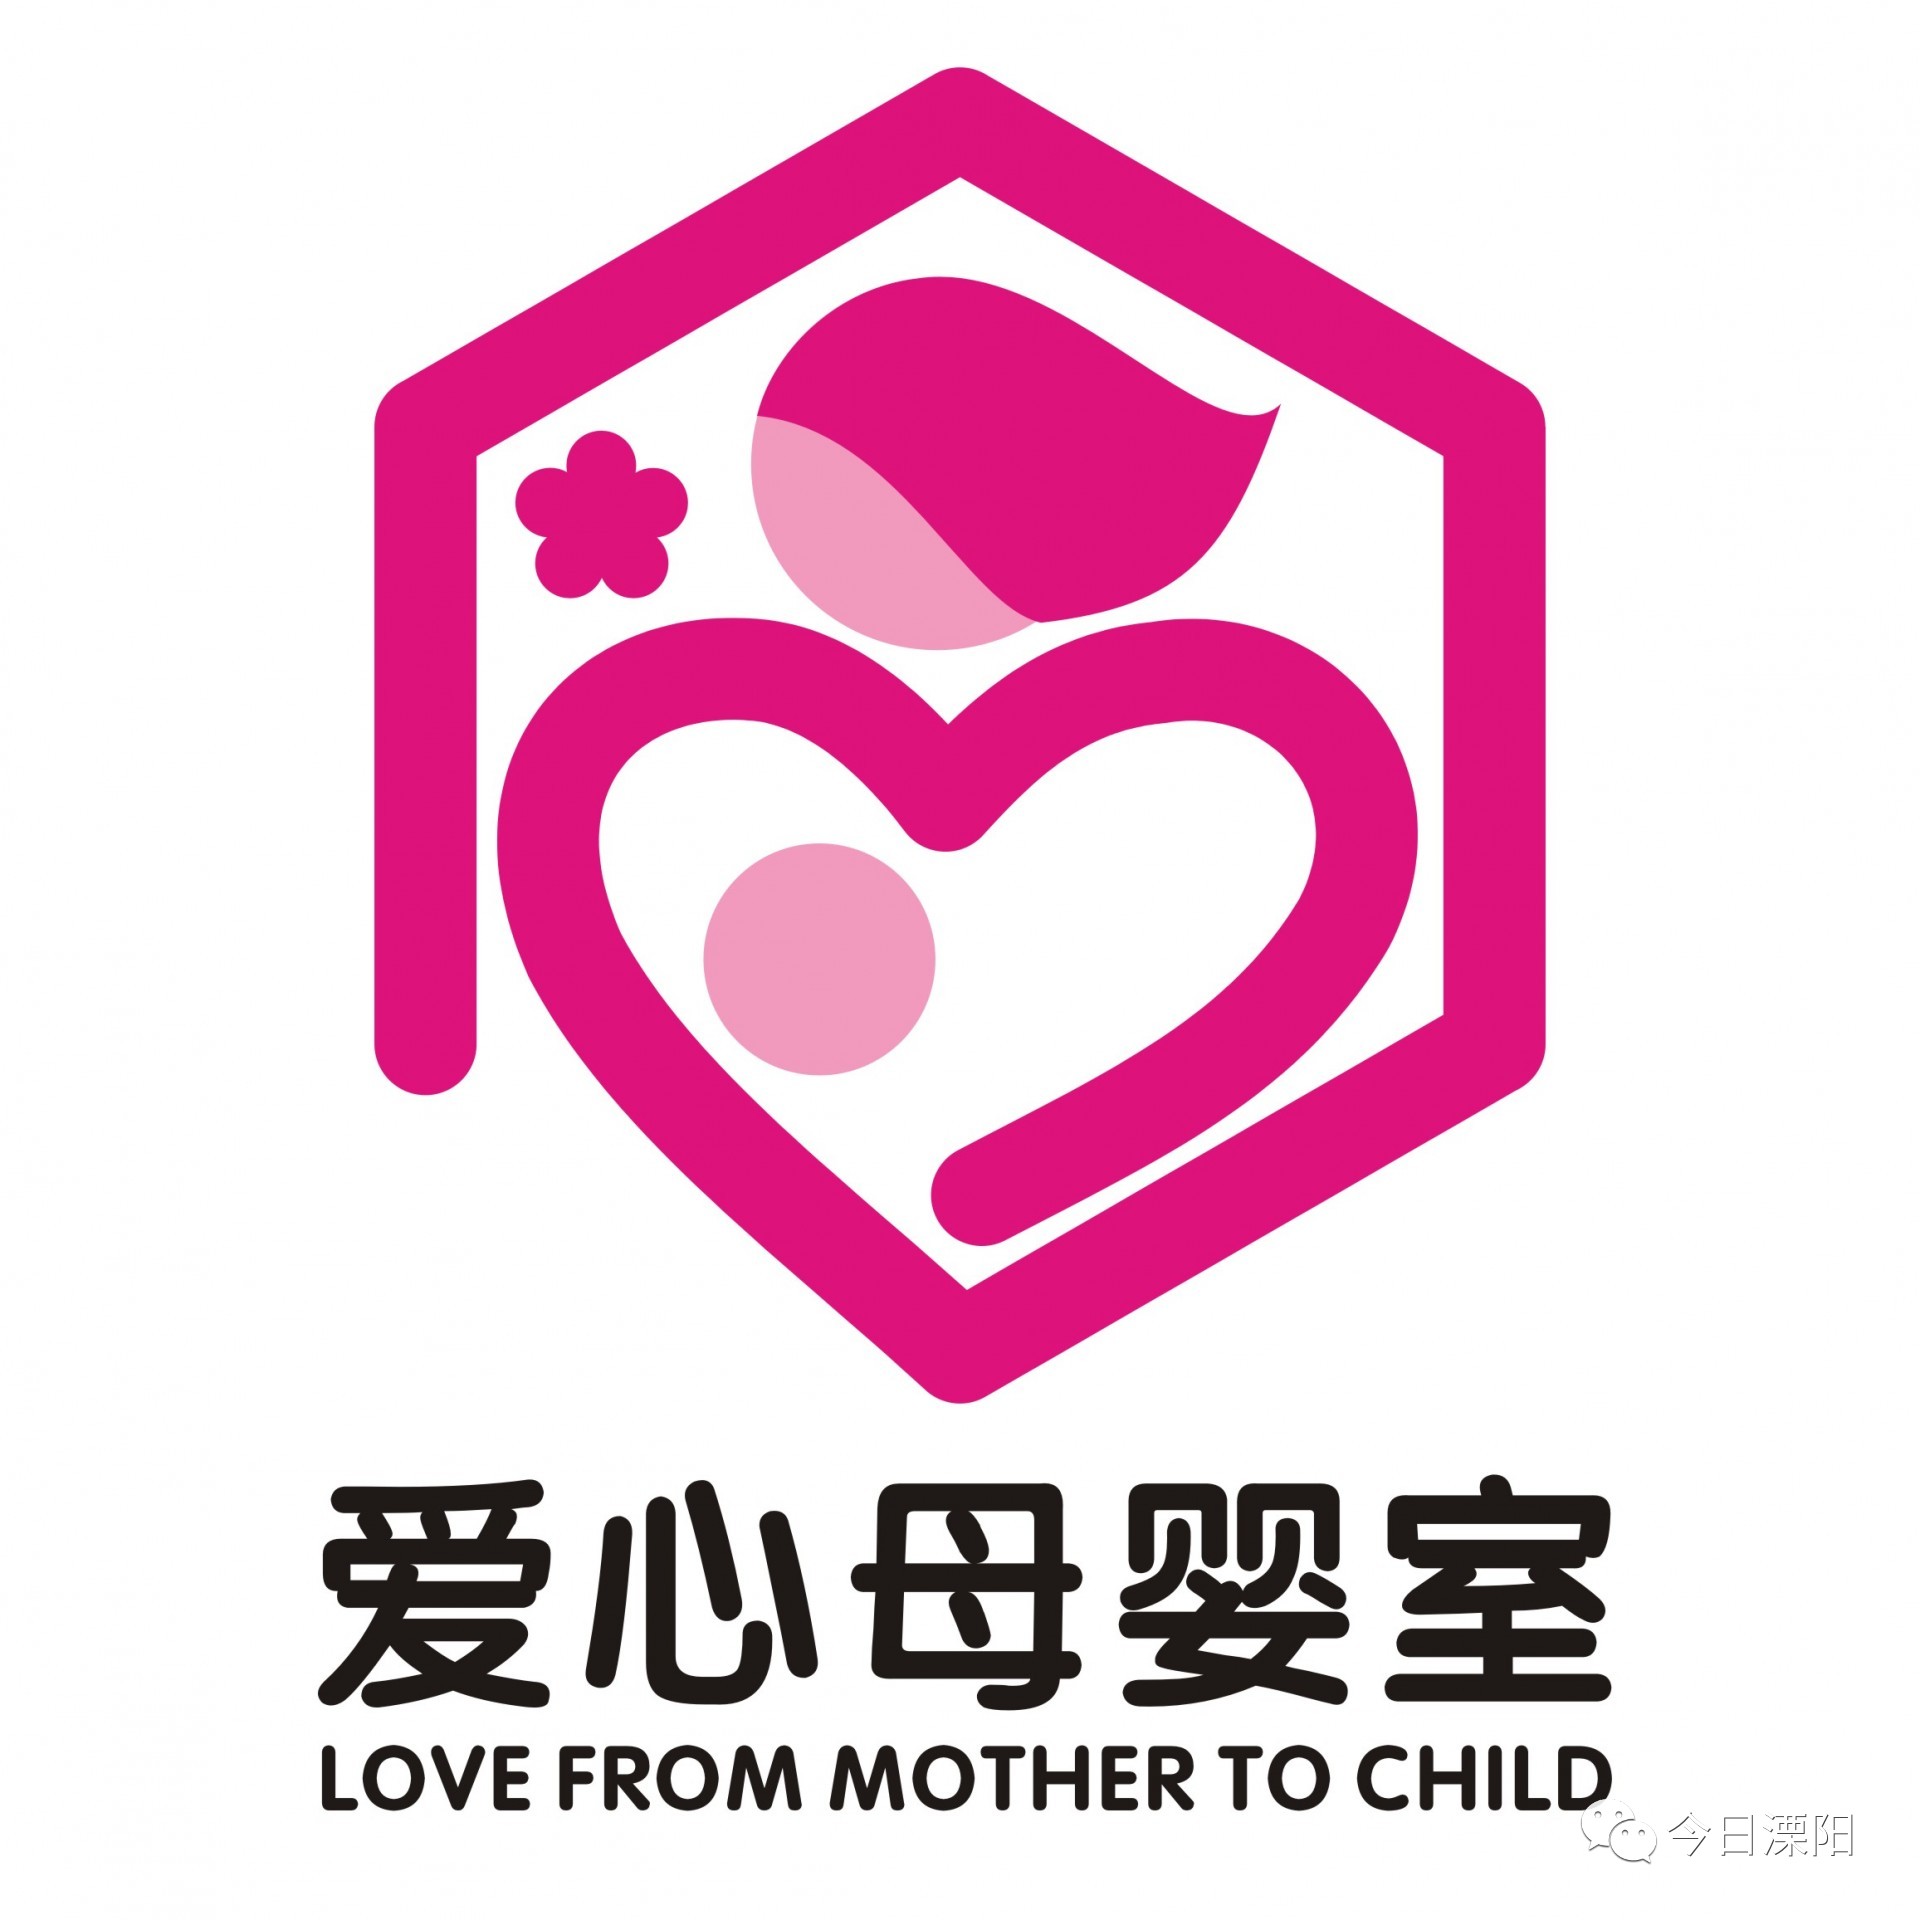 【小空间 爱无限】溧阳已建成"爱心母婴室"34家!为"背奶"妈妈解忧